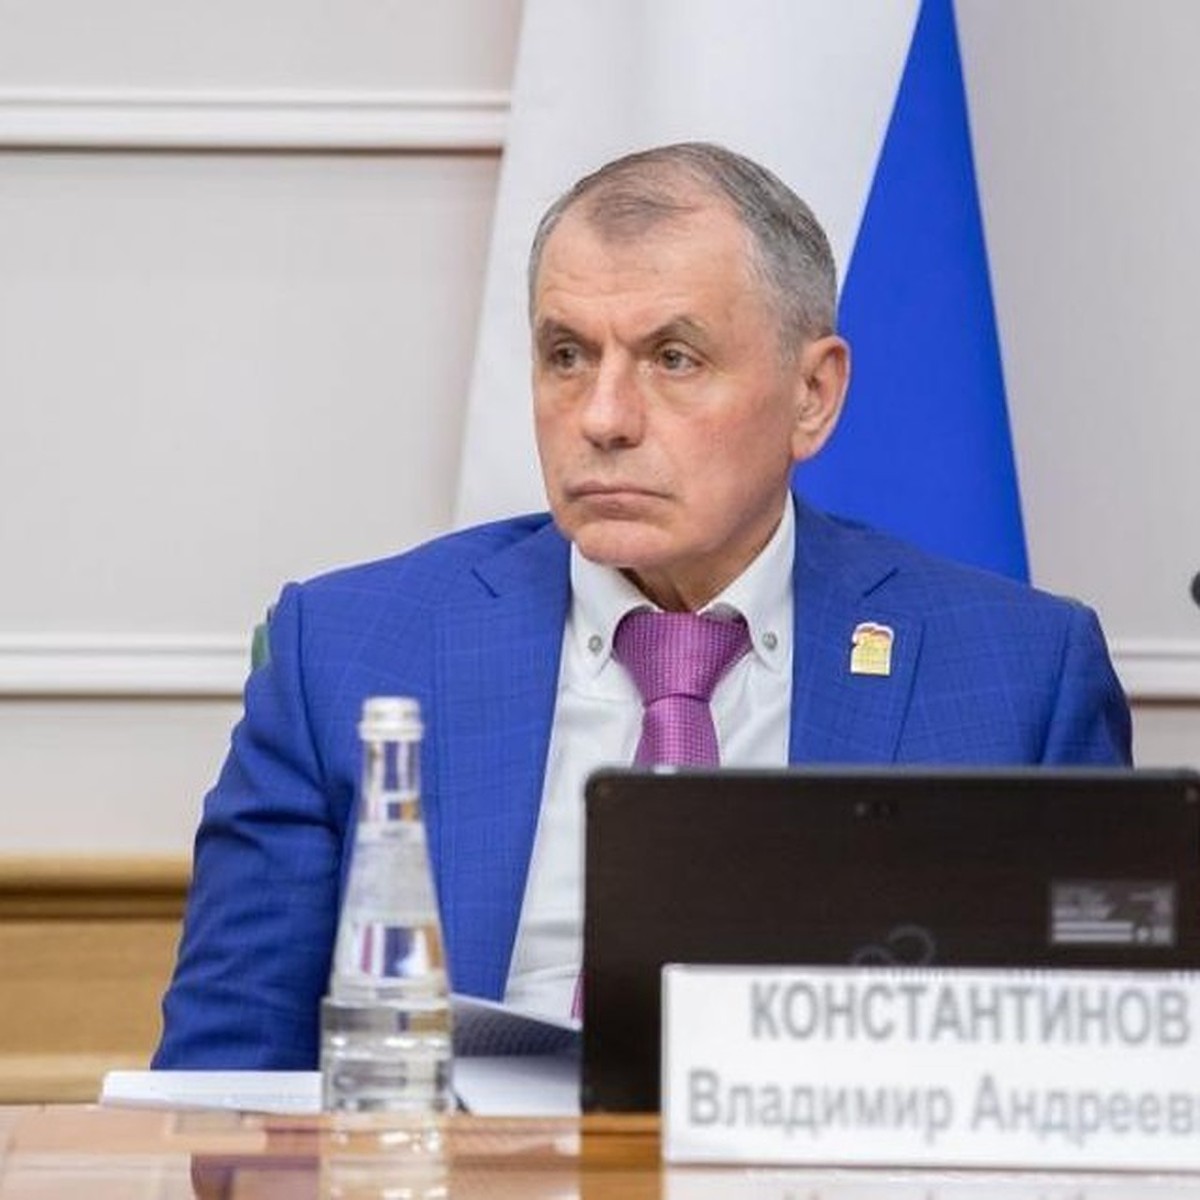 Константинов ответил на слова Буданова об уничтожении 3 миллионов крымчан -  KP.RU